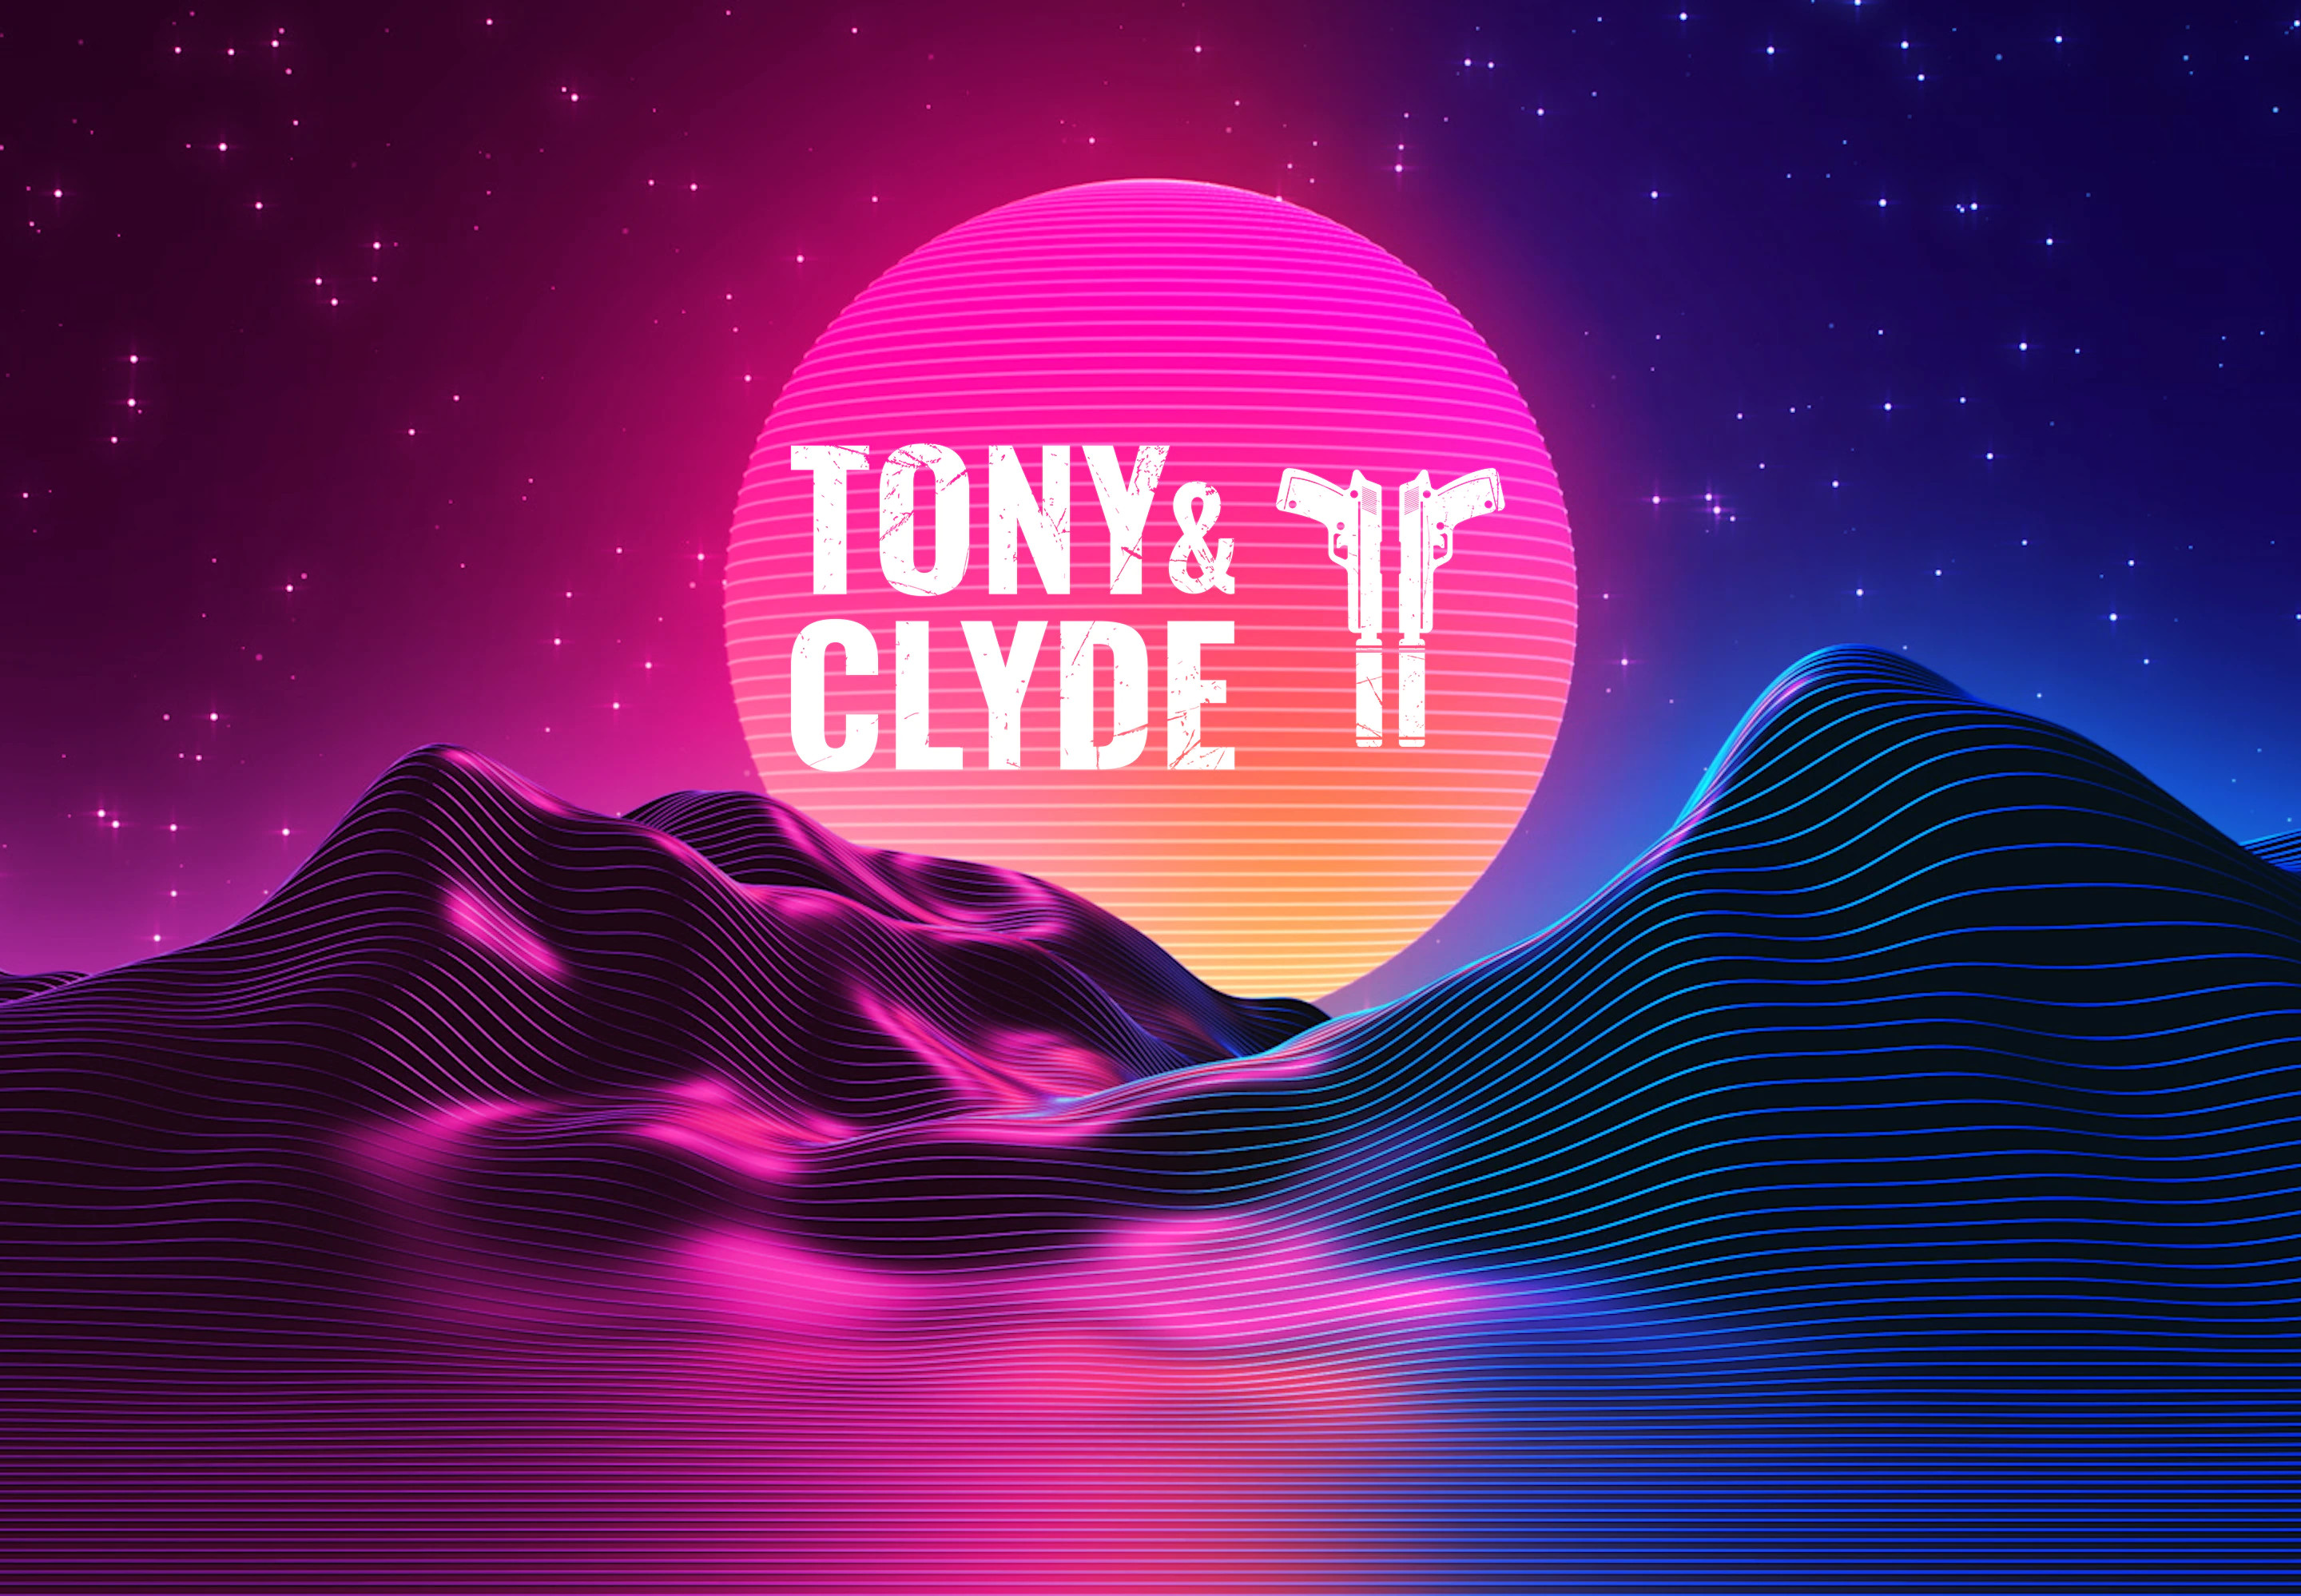 Tony And Clyde EU PS4 CD Key